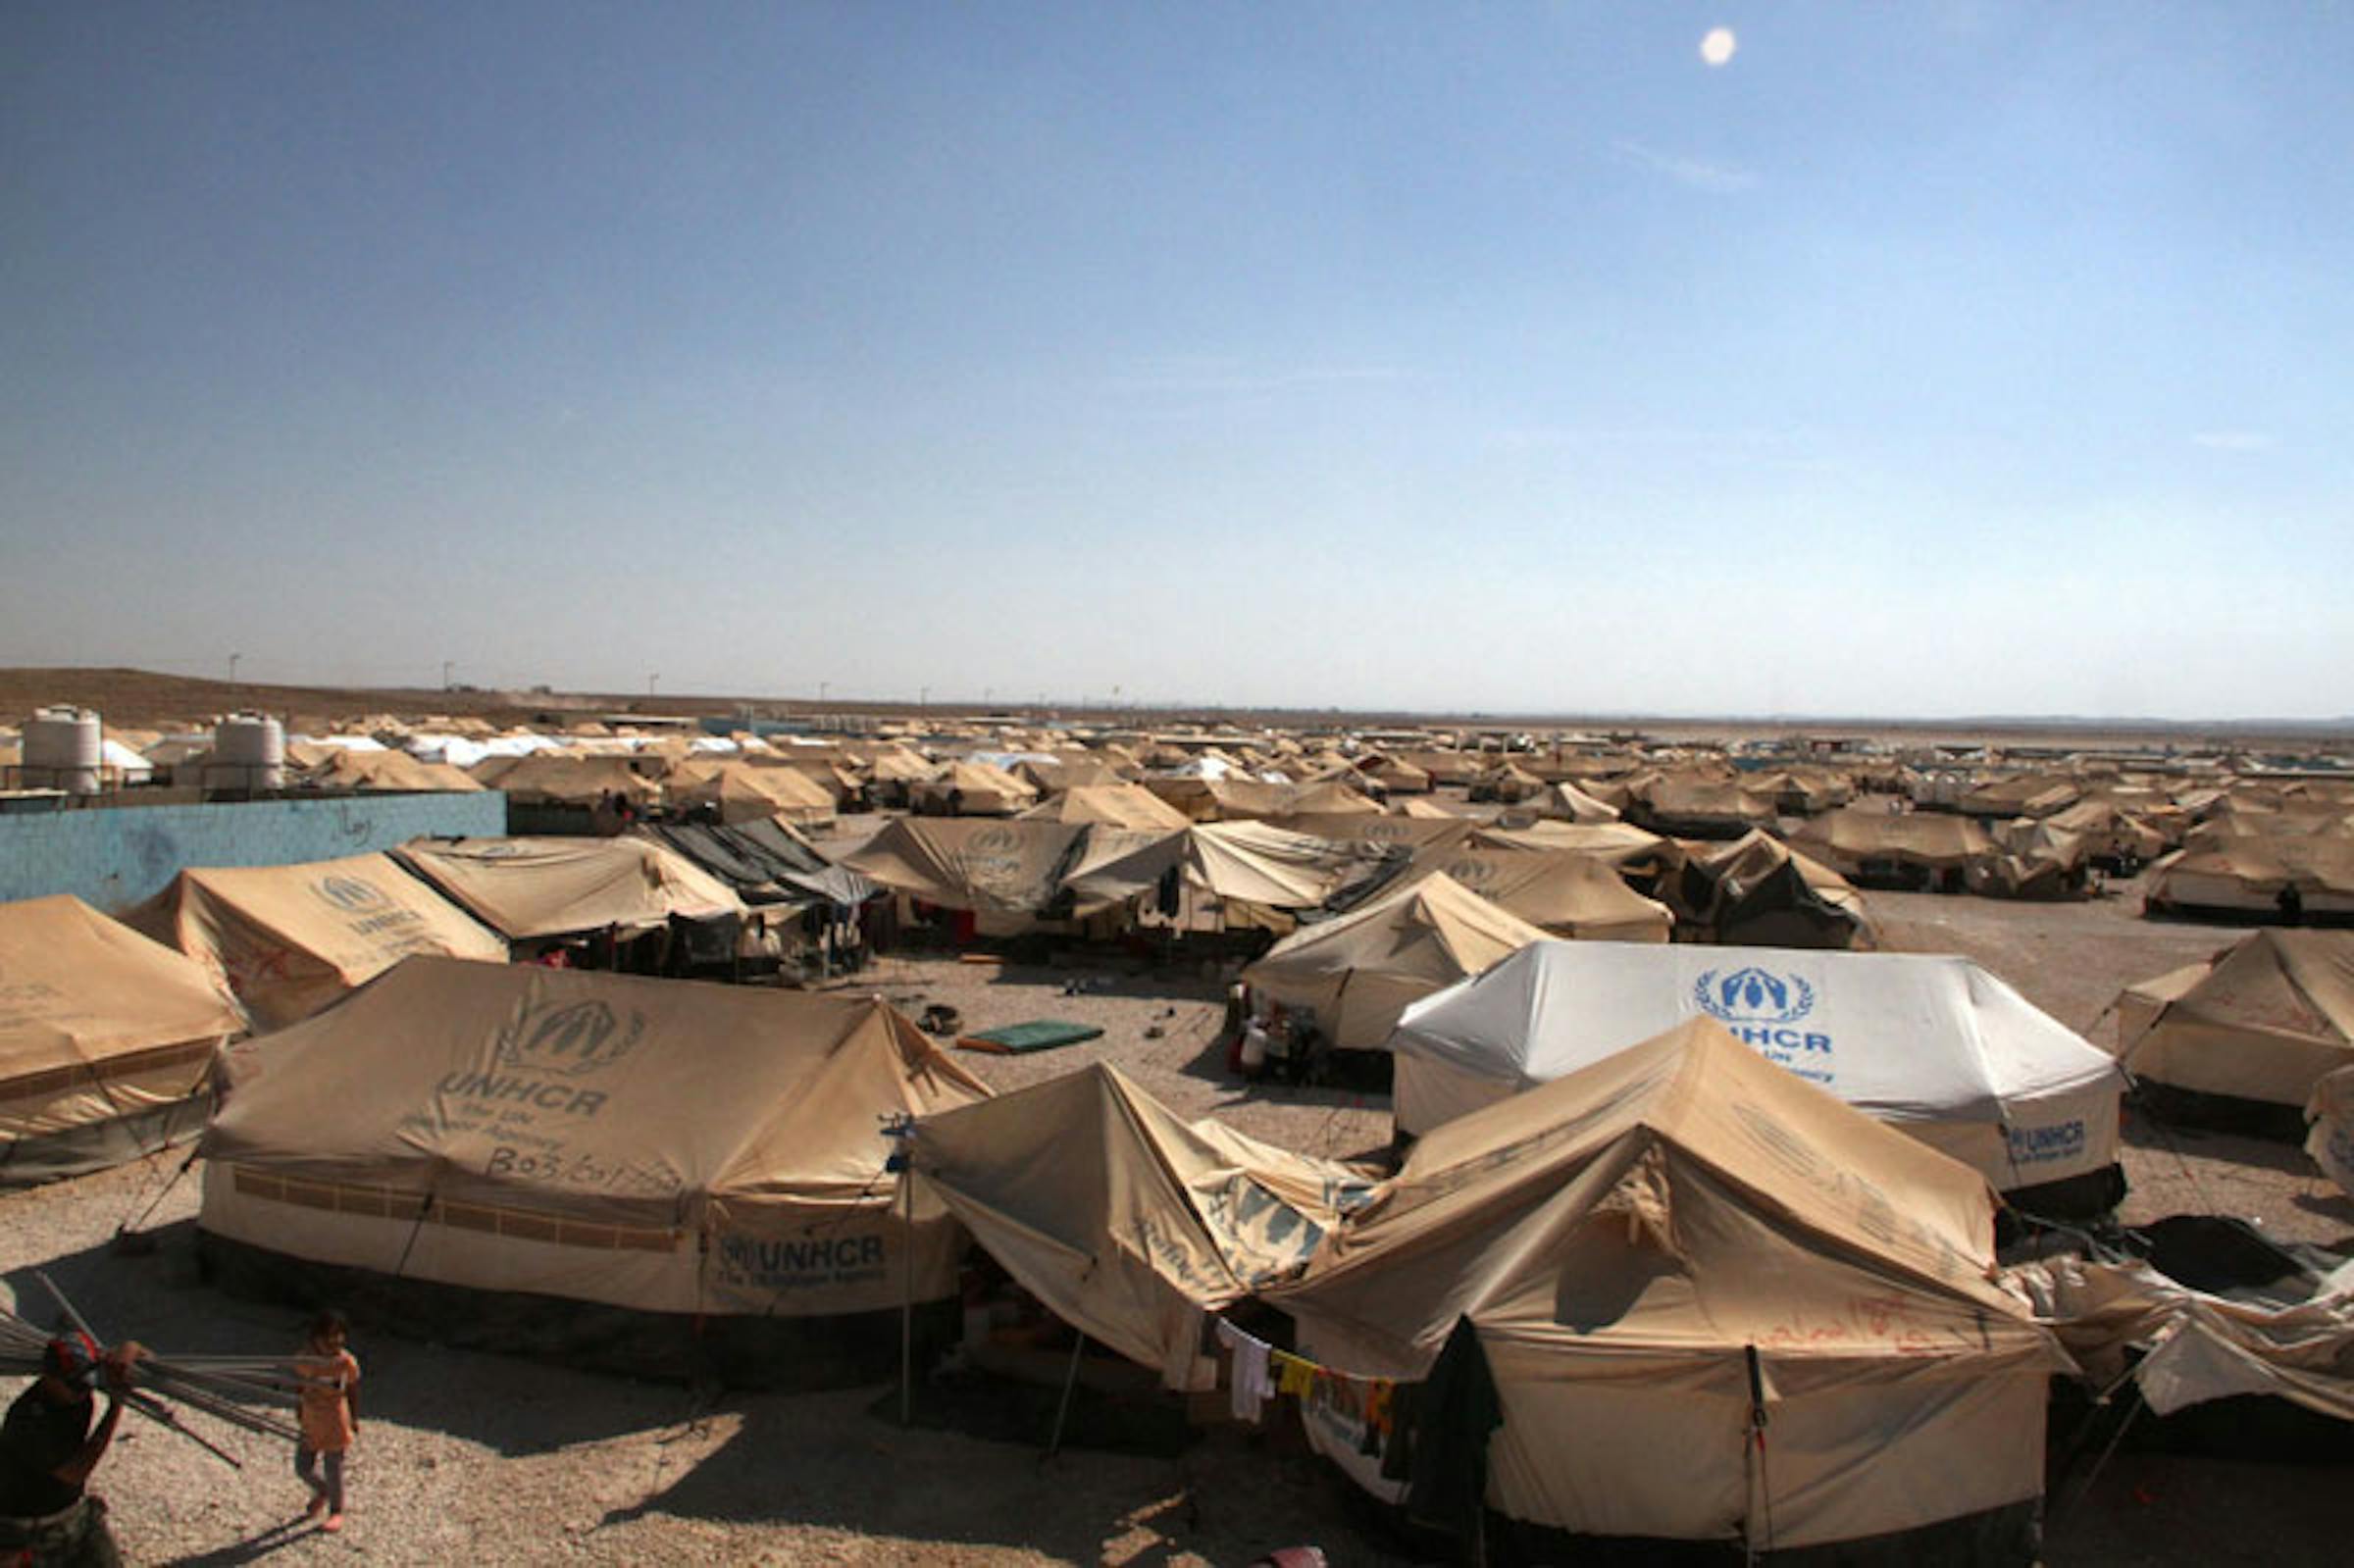 Le tende del campo profughi di Za'atari (Giordania) - ©UNICEF Giordania/2012/Al Masri